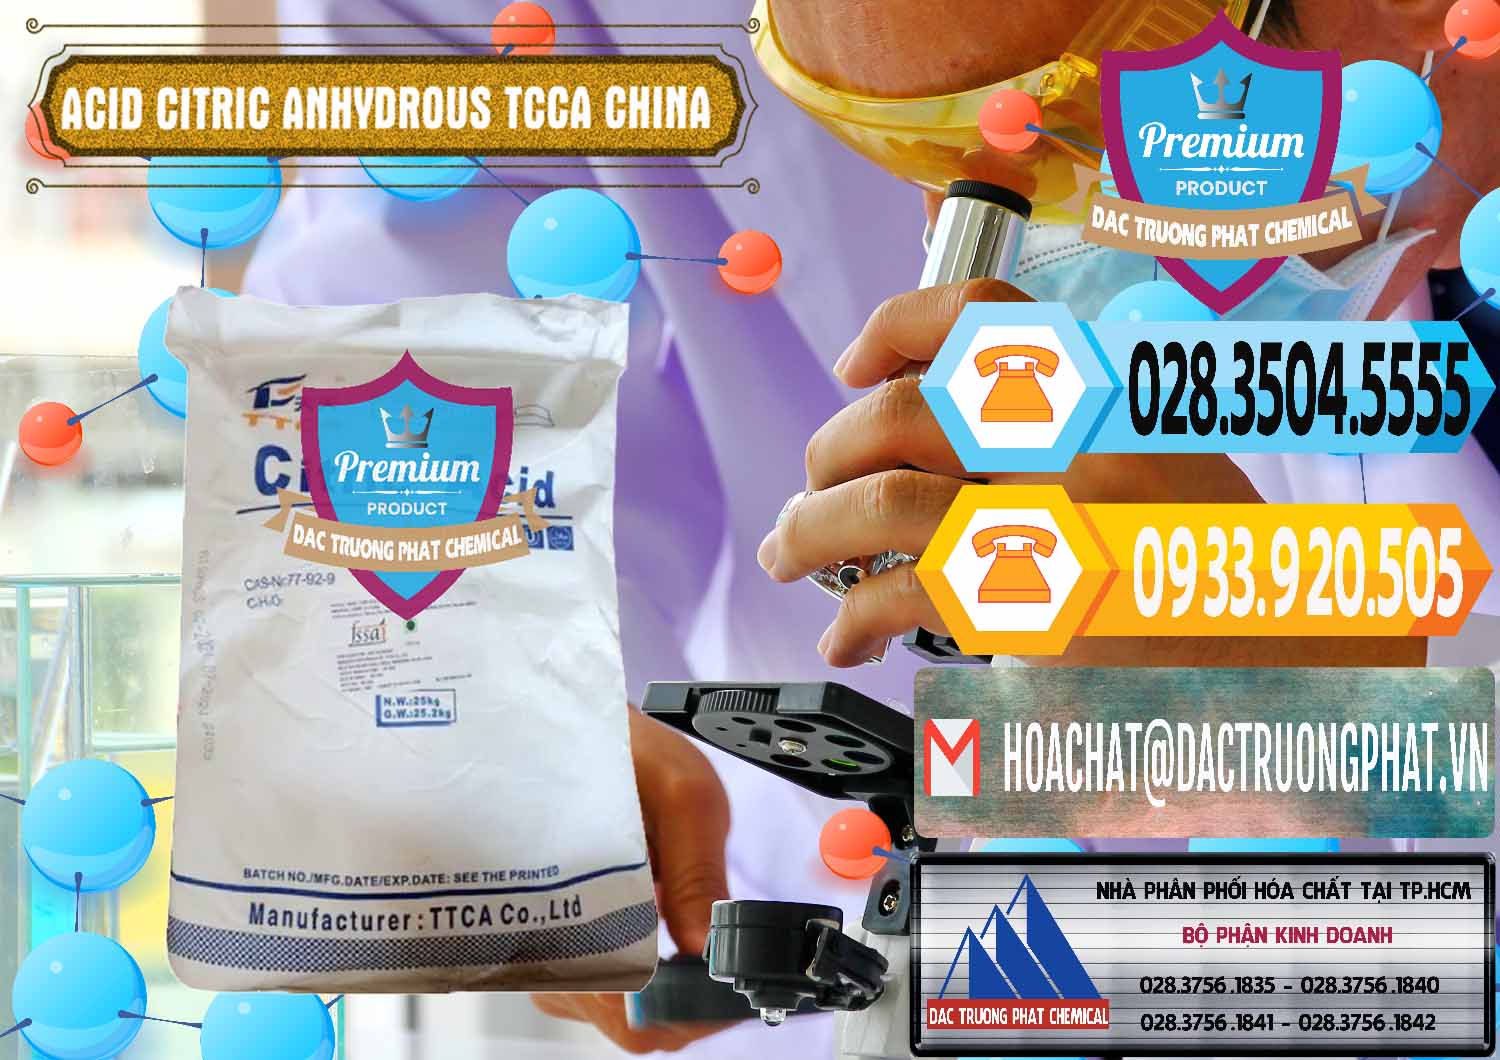 Nơi bán và phân phối Acid Citric - Axit Citric Anhydrous TCCA Trung Quốc China - 0442 - Cty chuyên phân phối _ nhập khẩu hóa chất tại TP.HCM - hoachattayrua.net